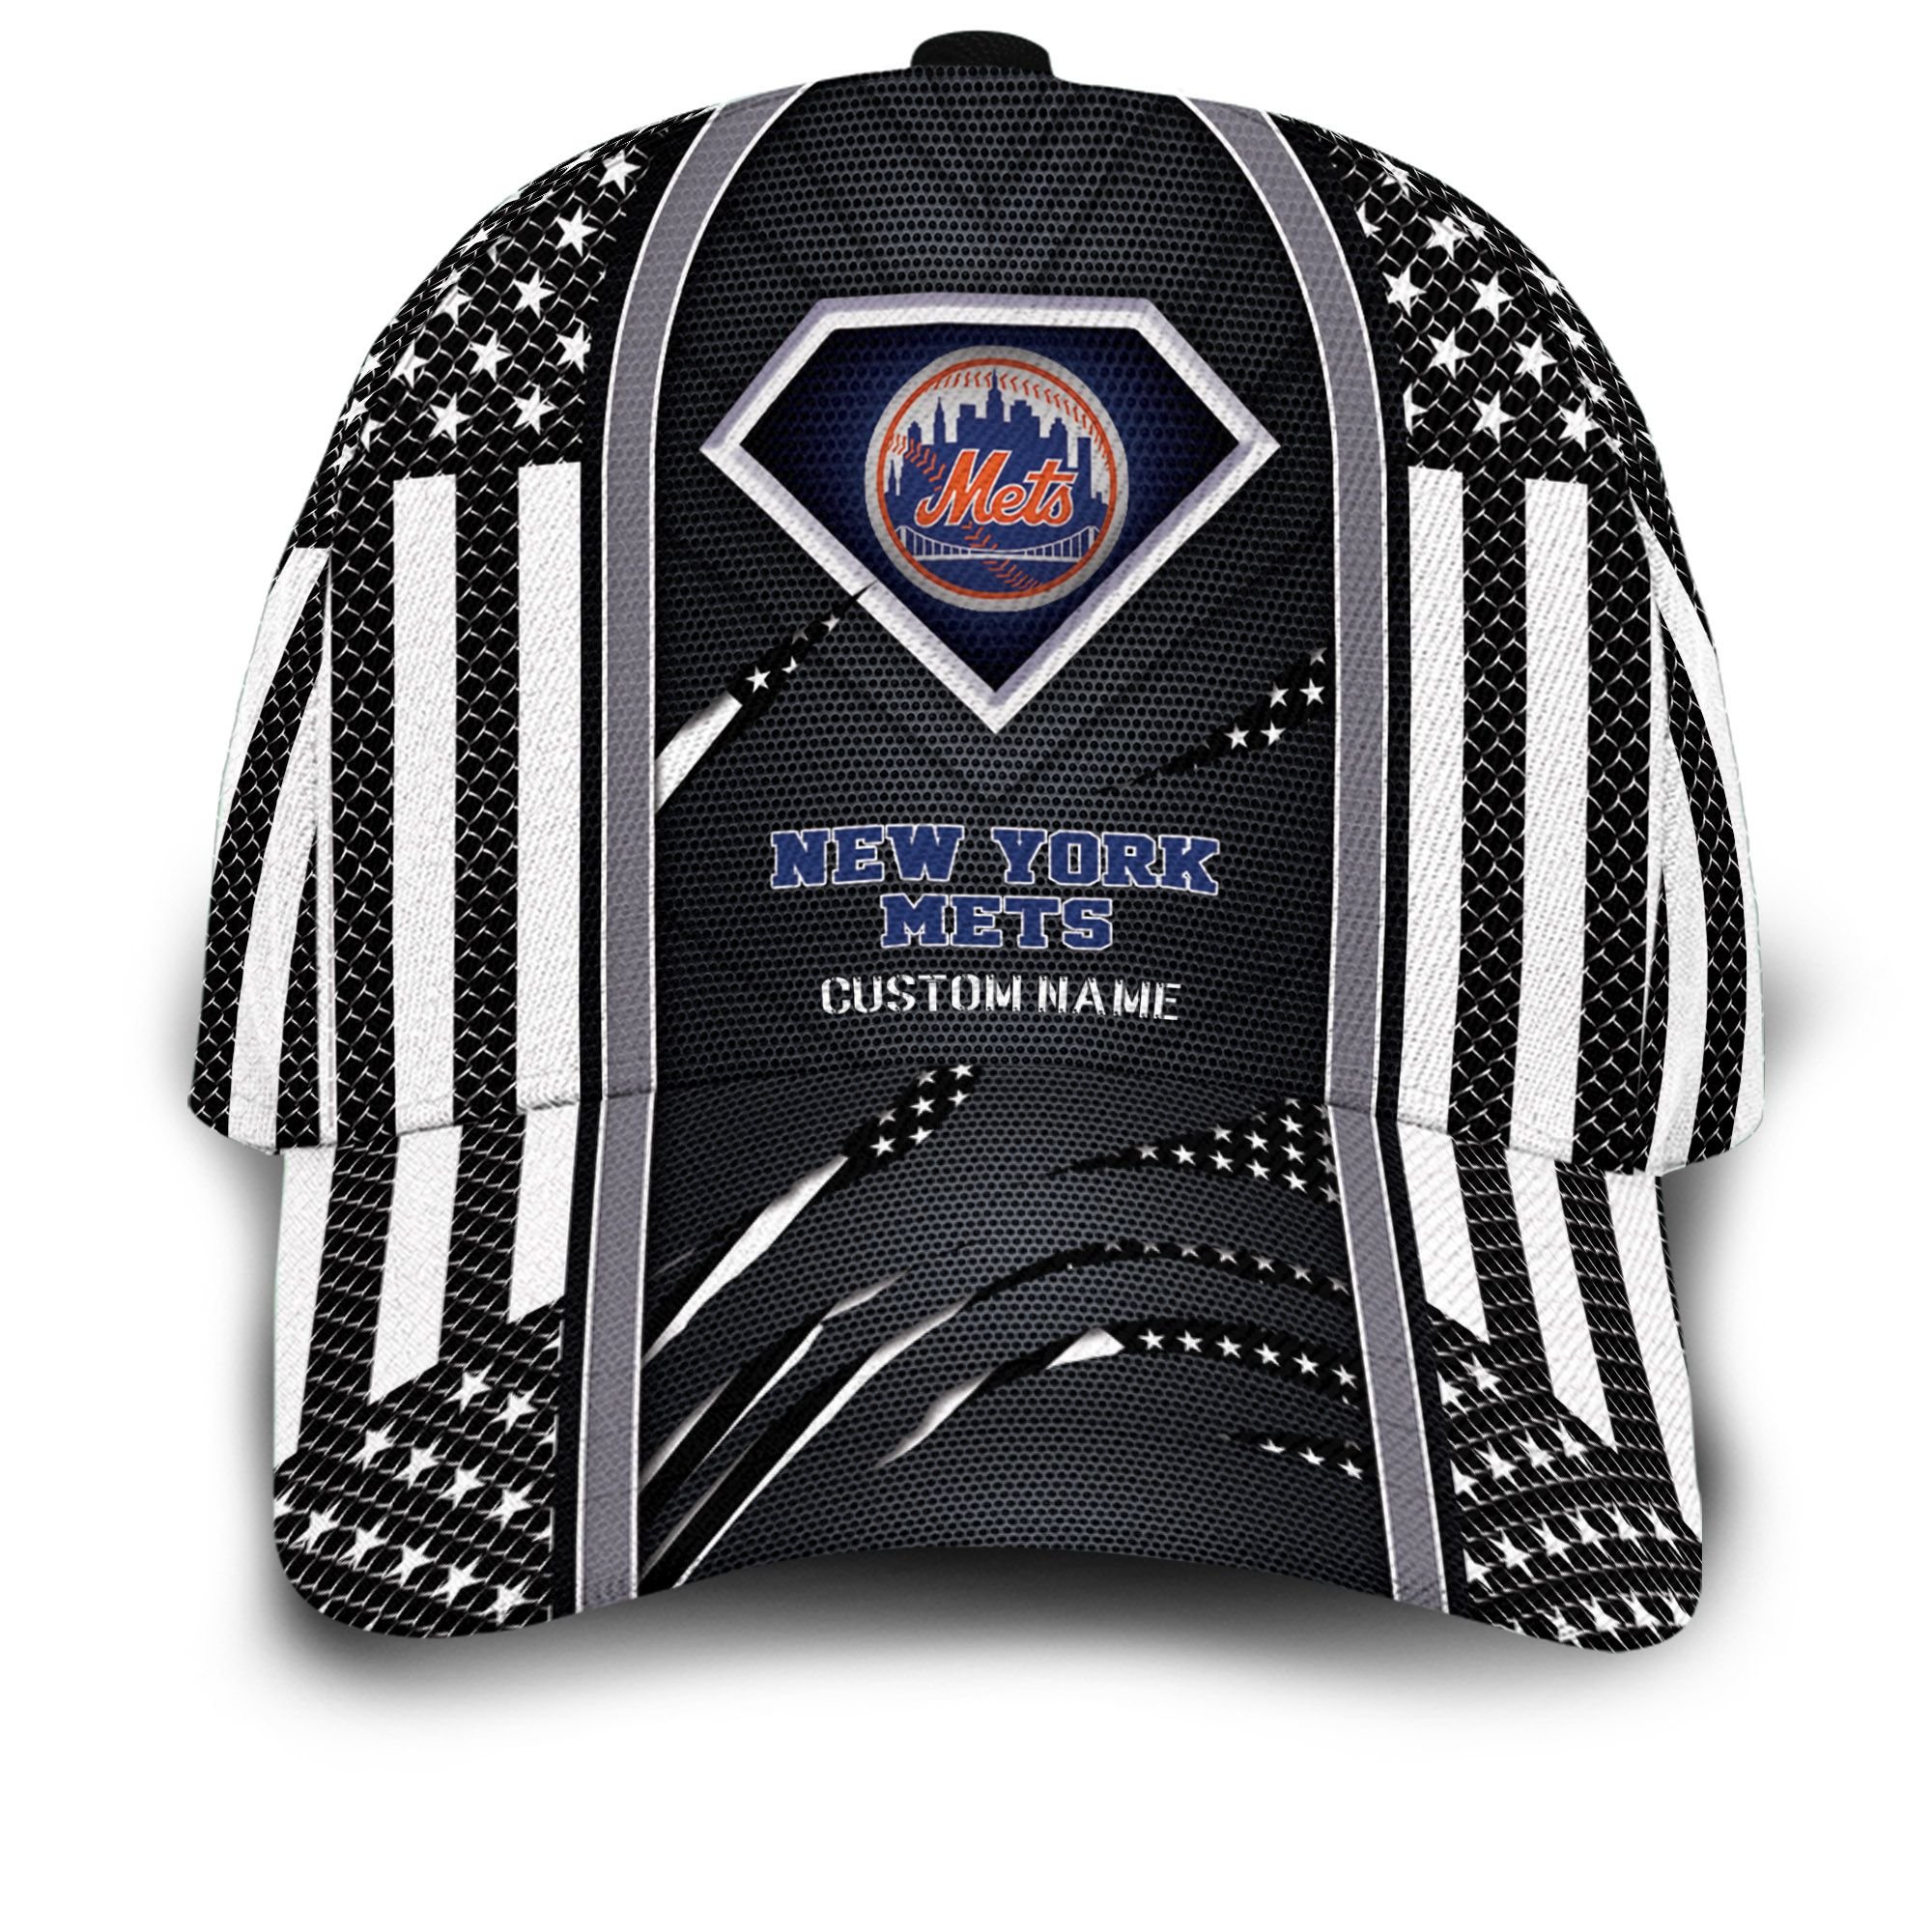 New York Yankees Mlb Team Logo Steel American Flag Cap Hat For Baseball ...